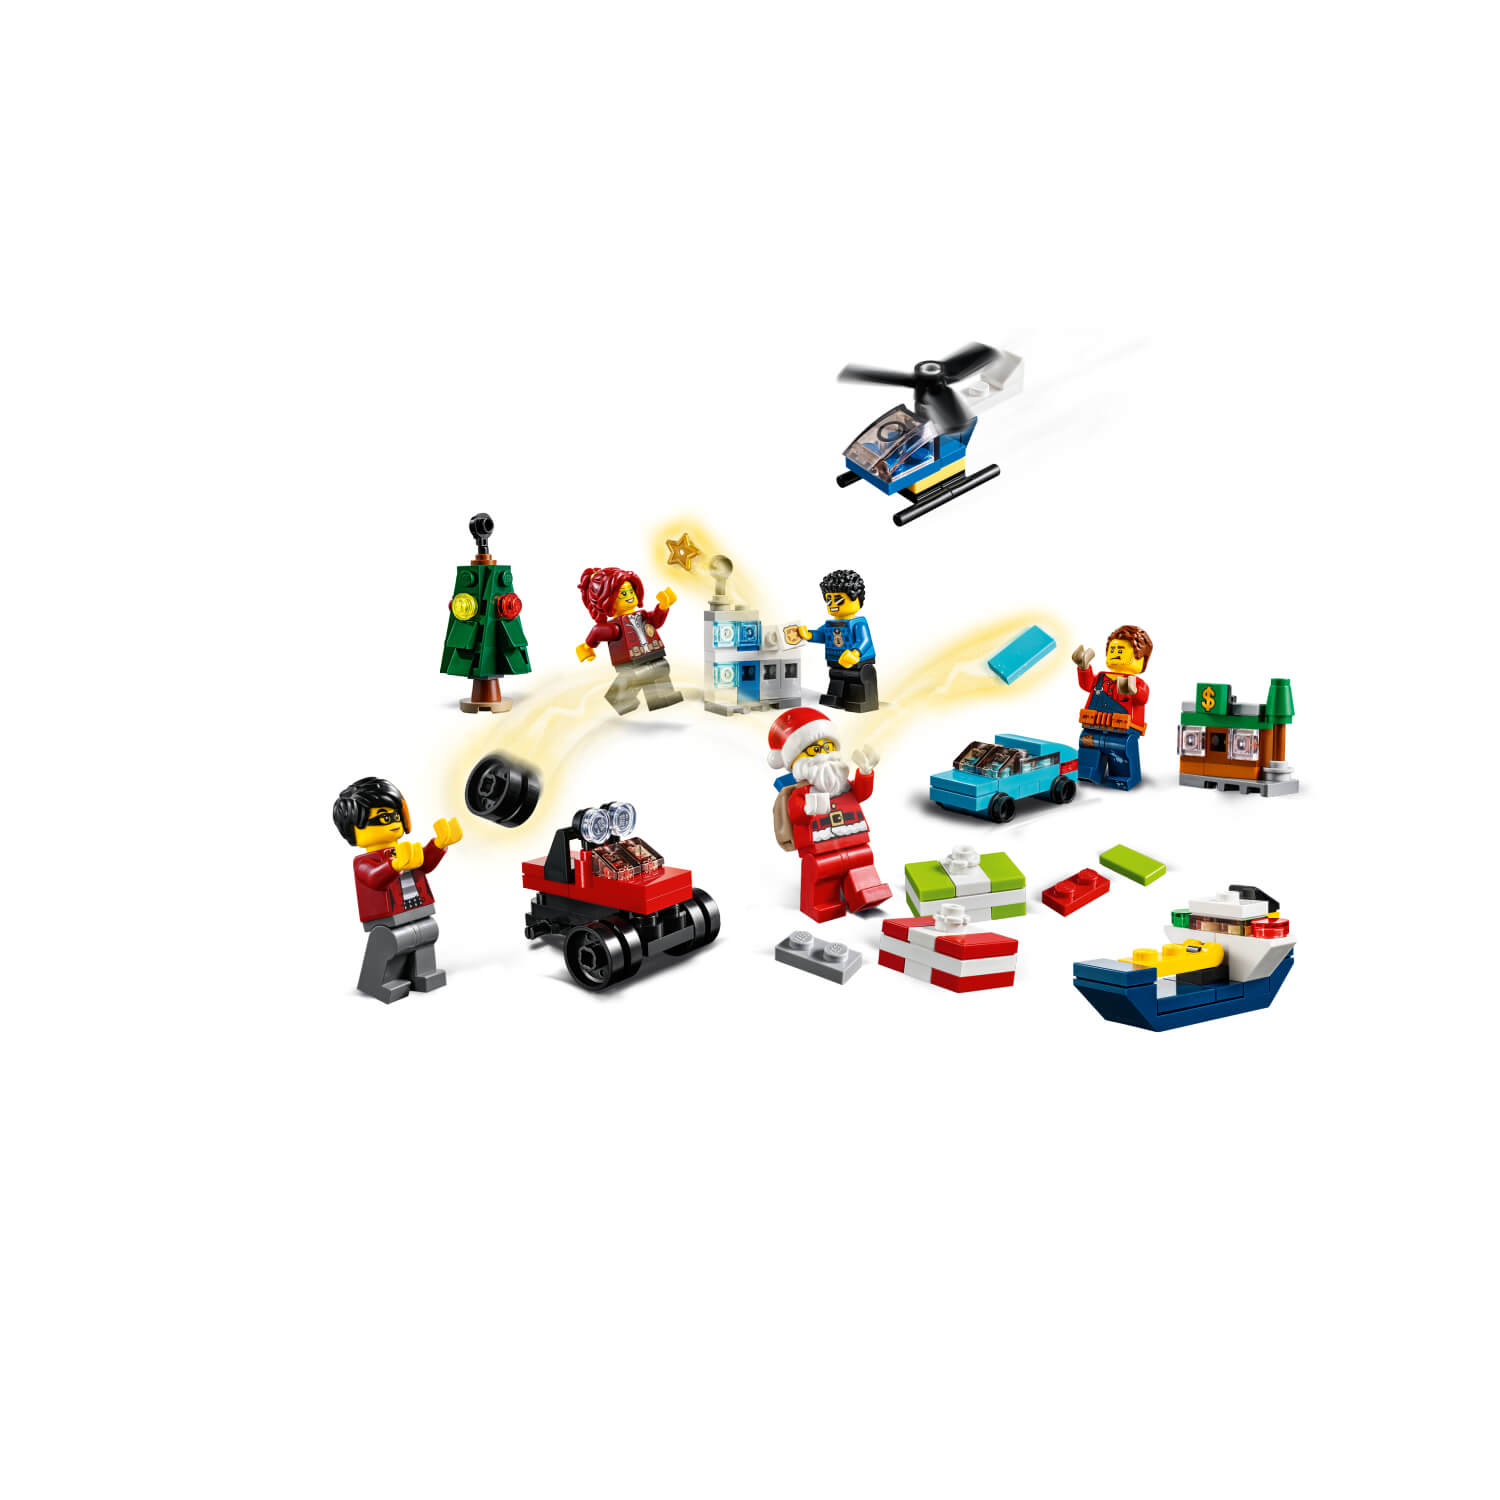 60268 LEGO City Advent kalendar